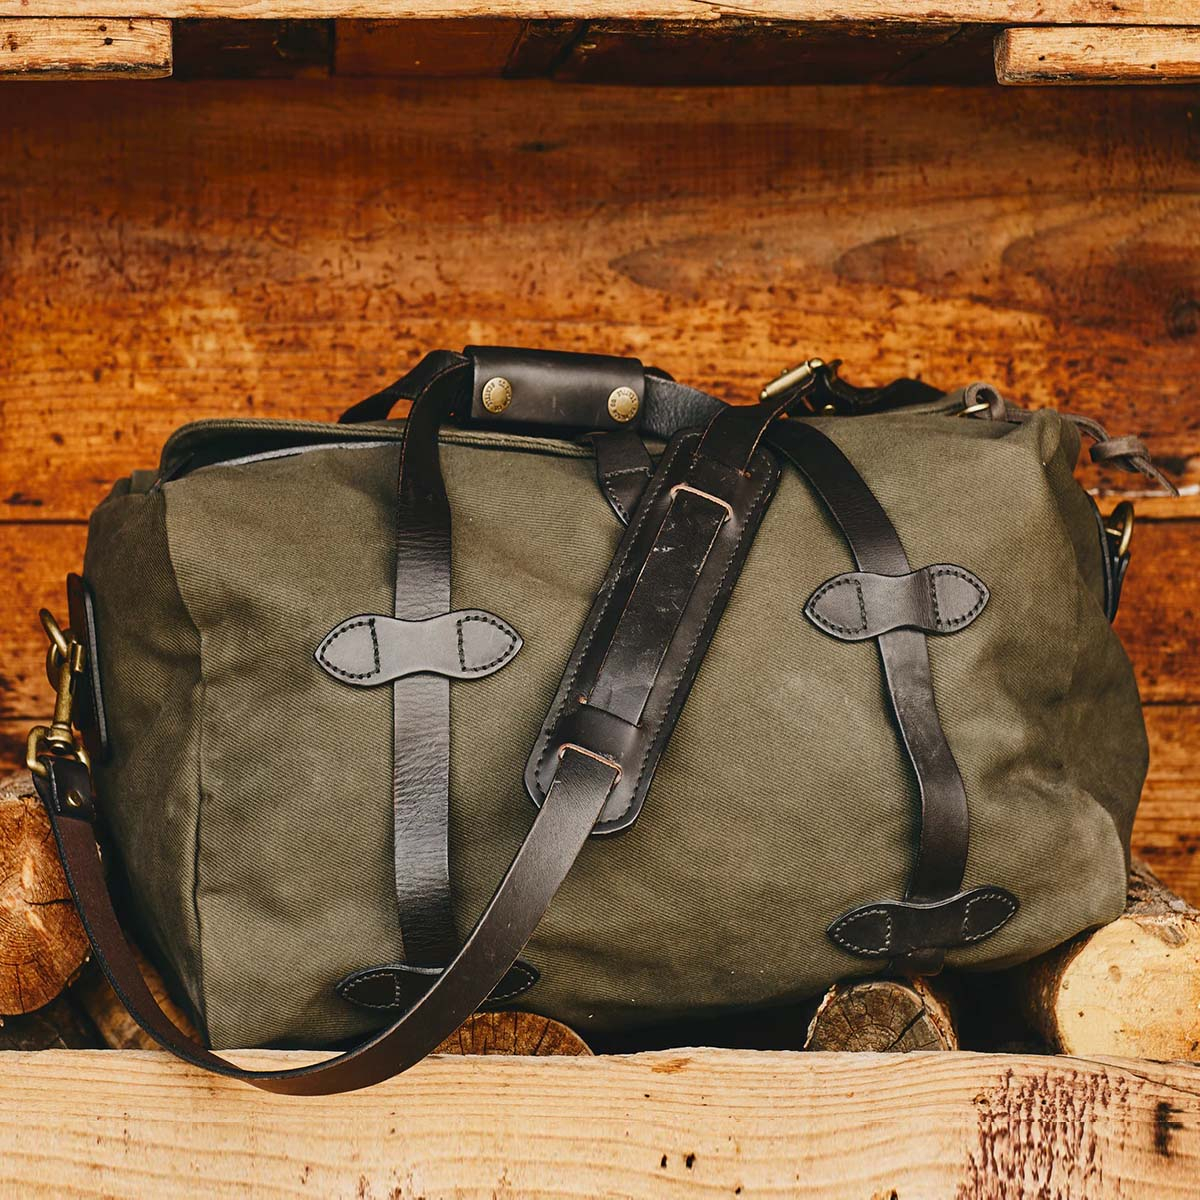 Filson Rugged Twill Duffle Bag Small Otter Green, reisetasche mit einen großzügigen Stauraum